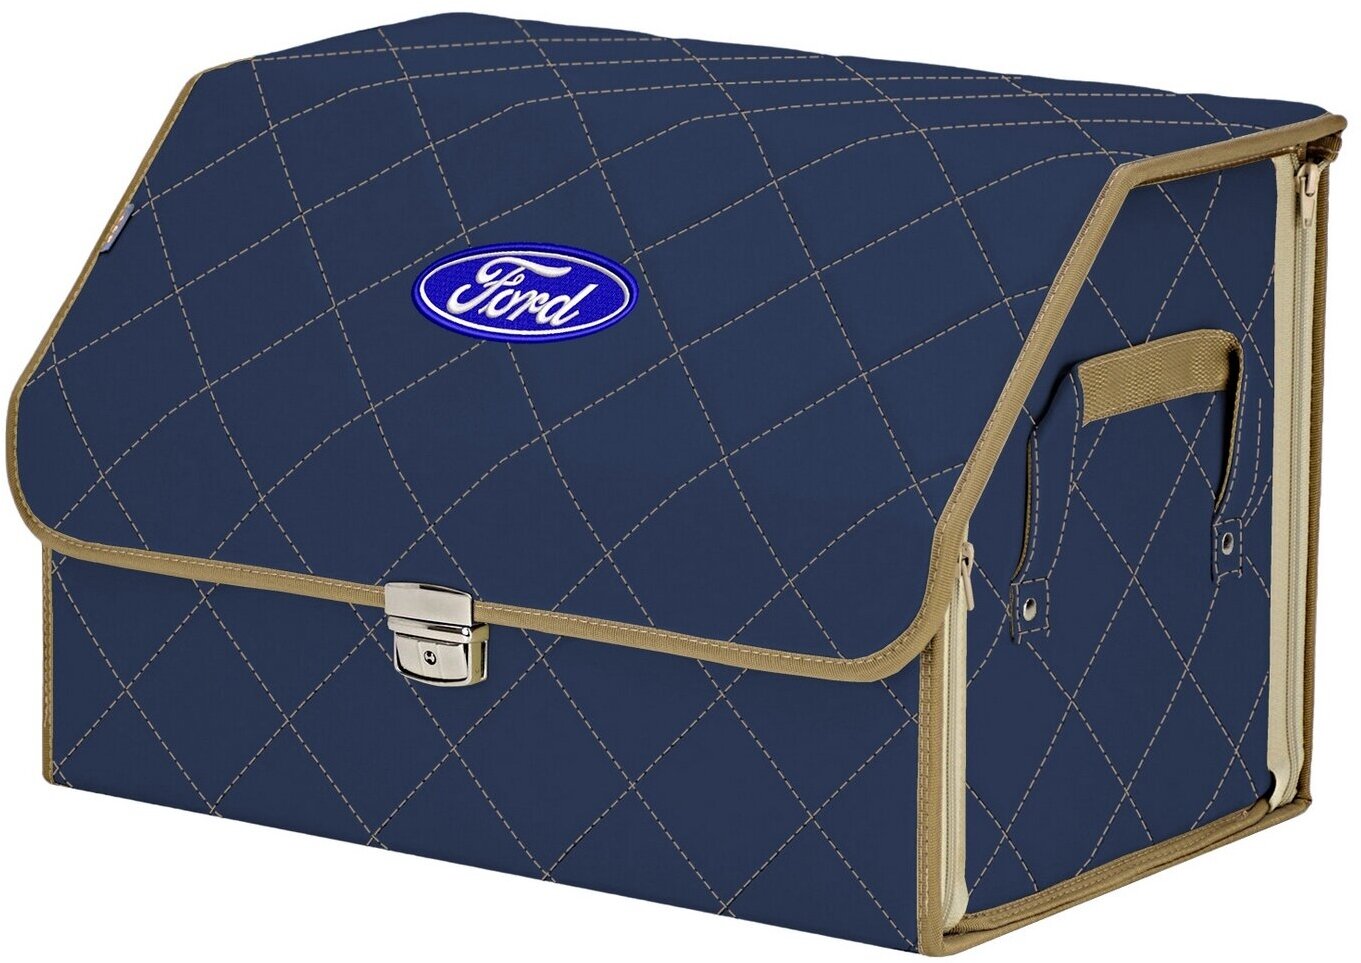 Органайзер-саквояж в багажник "Союз Премиум" (размер L). Цвет: синий с бежевой прострочкой Ромб и вышивкой Ford (Форд).